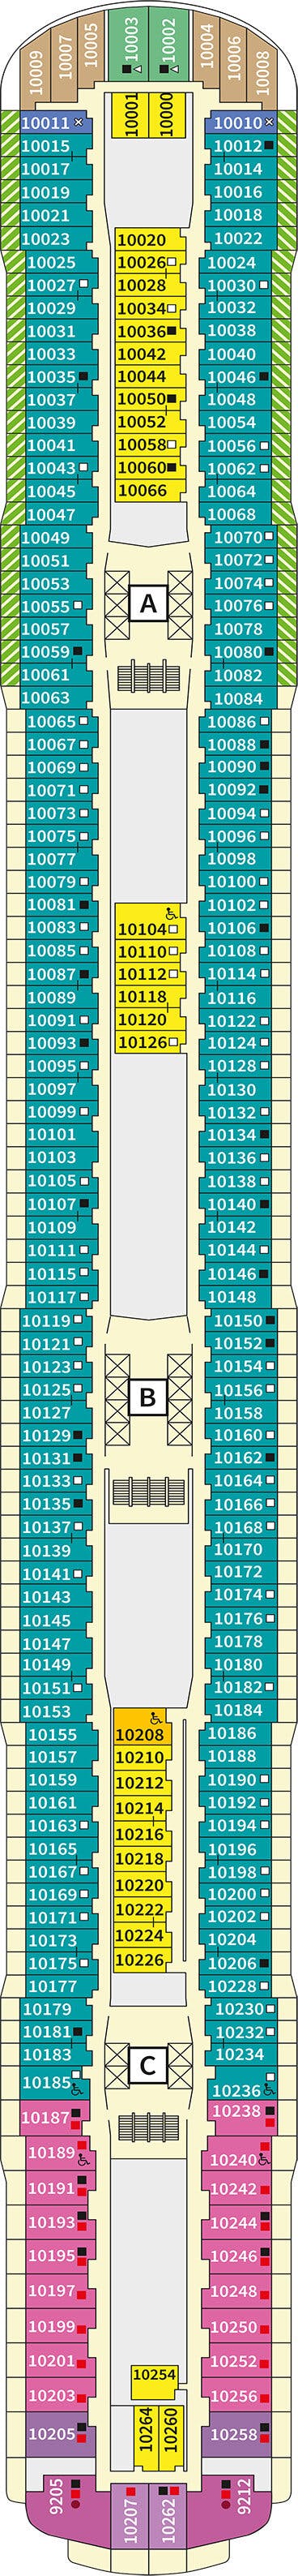 Mein Schiff Relax - TUI Cruises - Deck 10 (Deck 10)